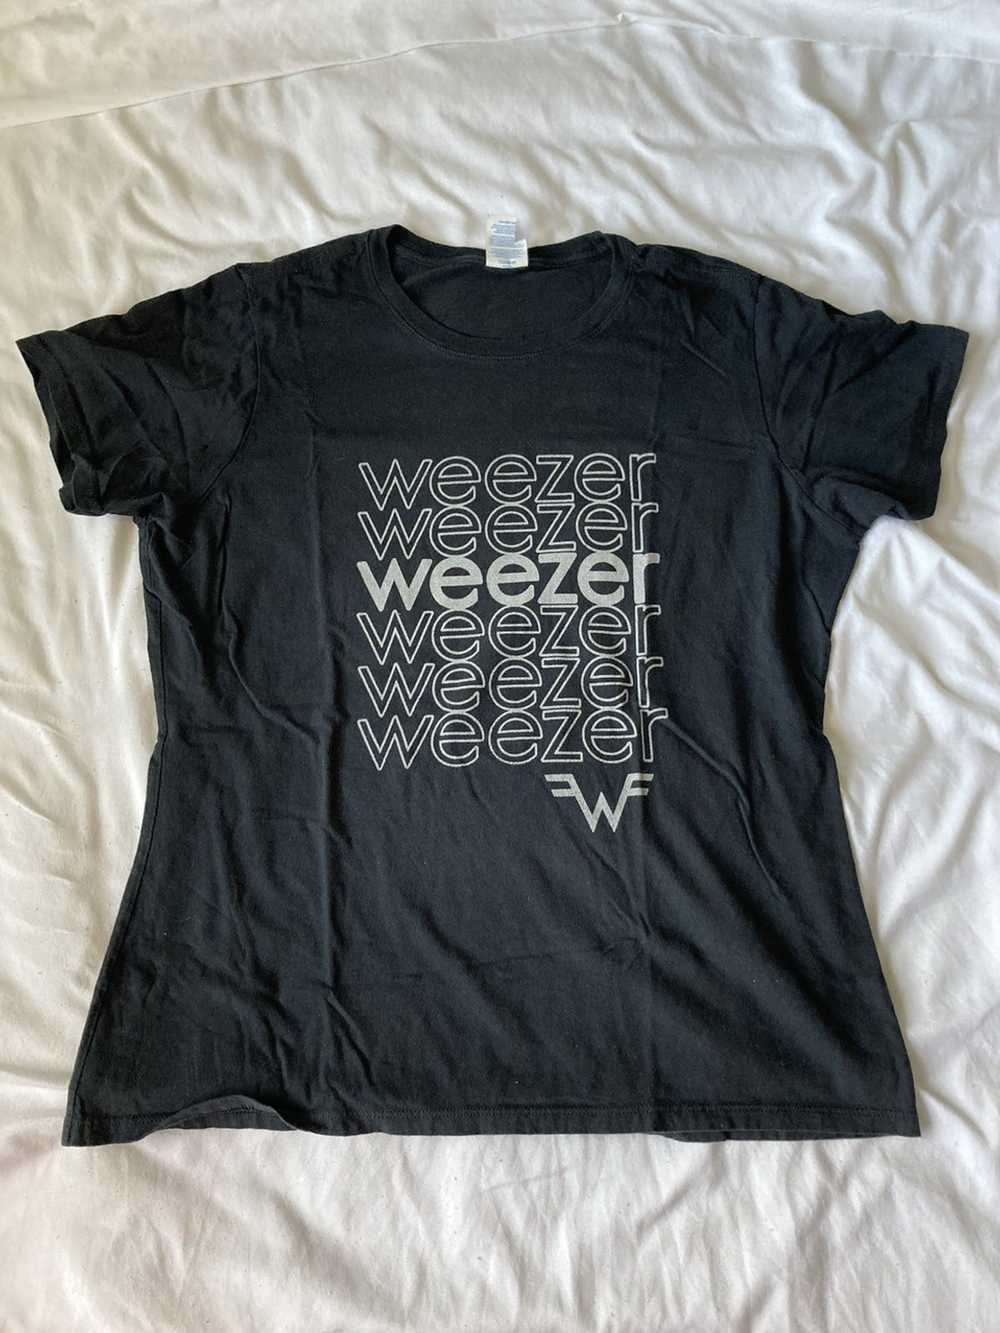 Band Tees × Vintage Weezer t shirt - image 1